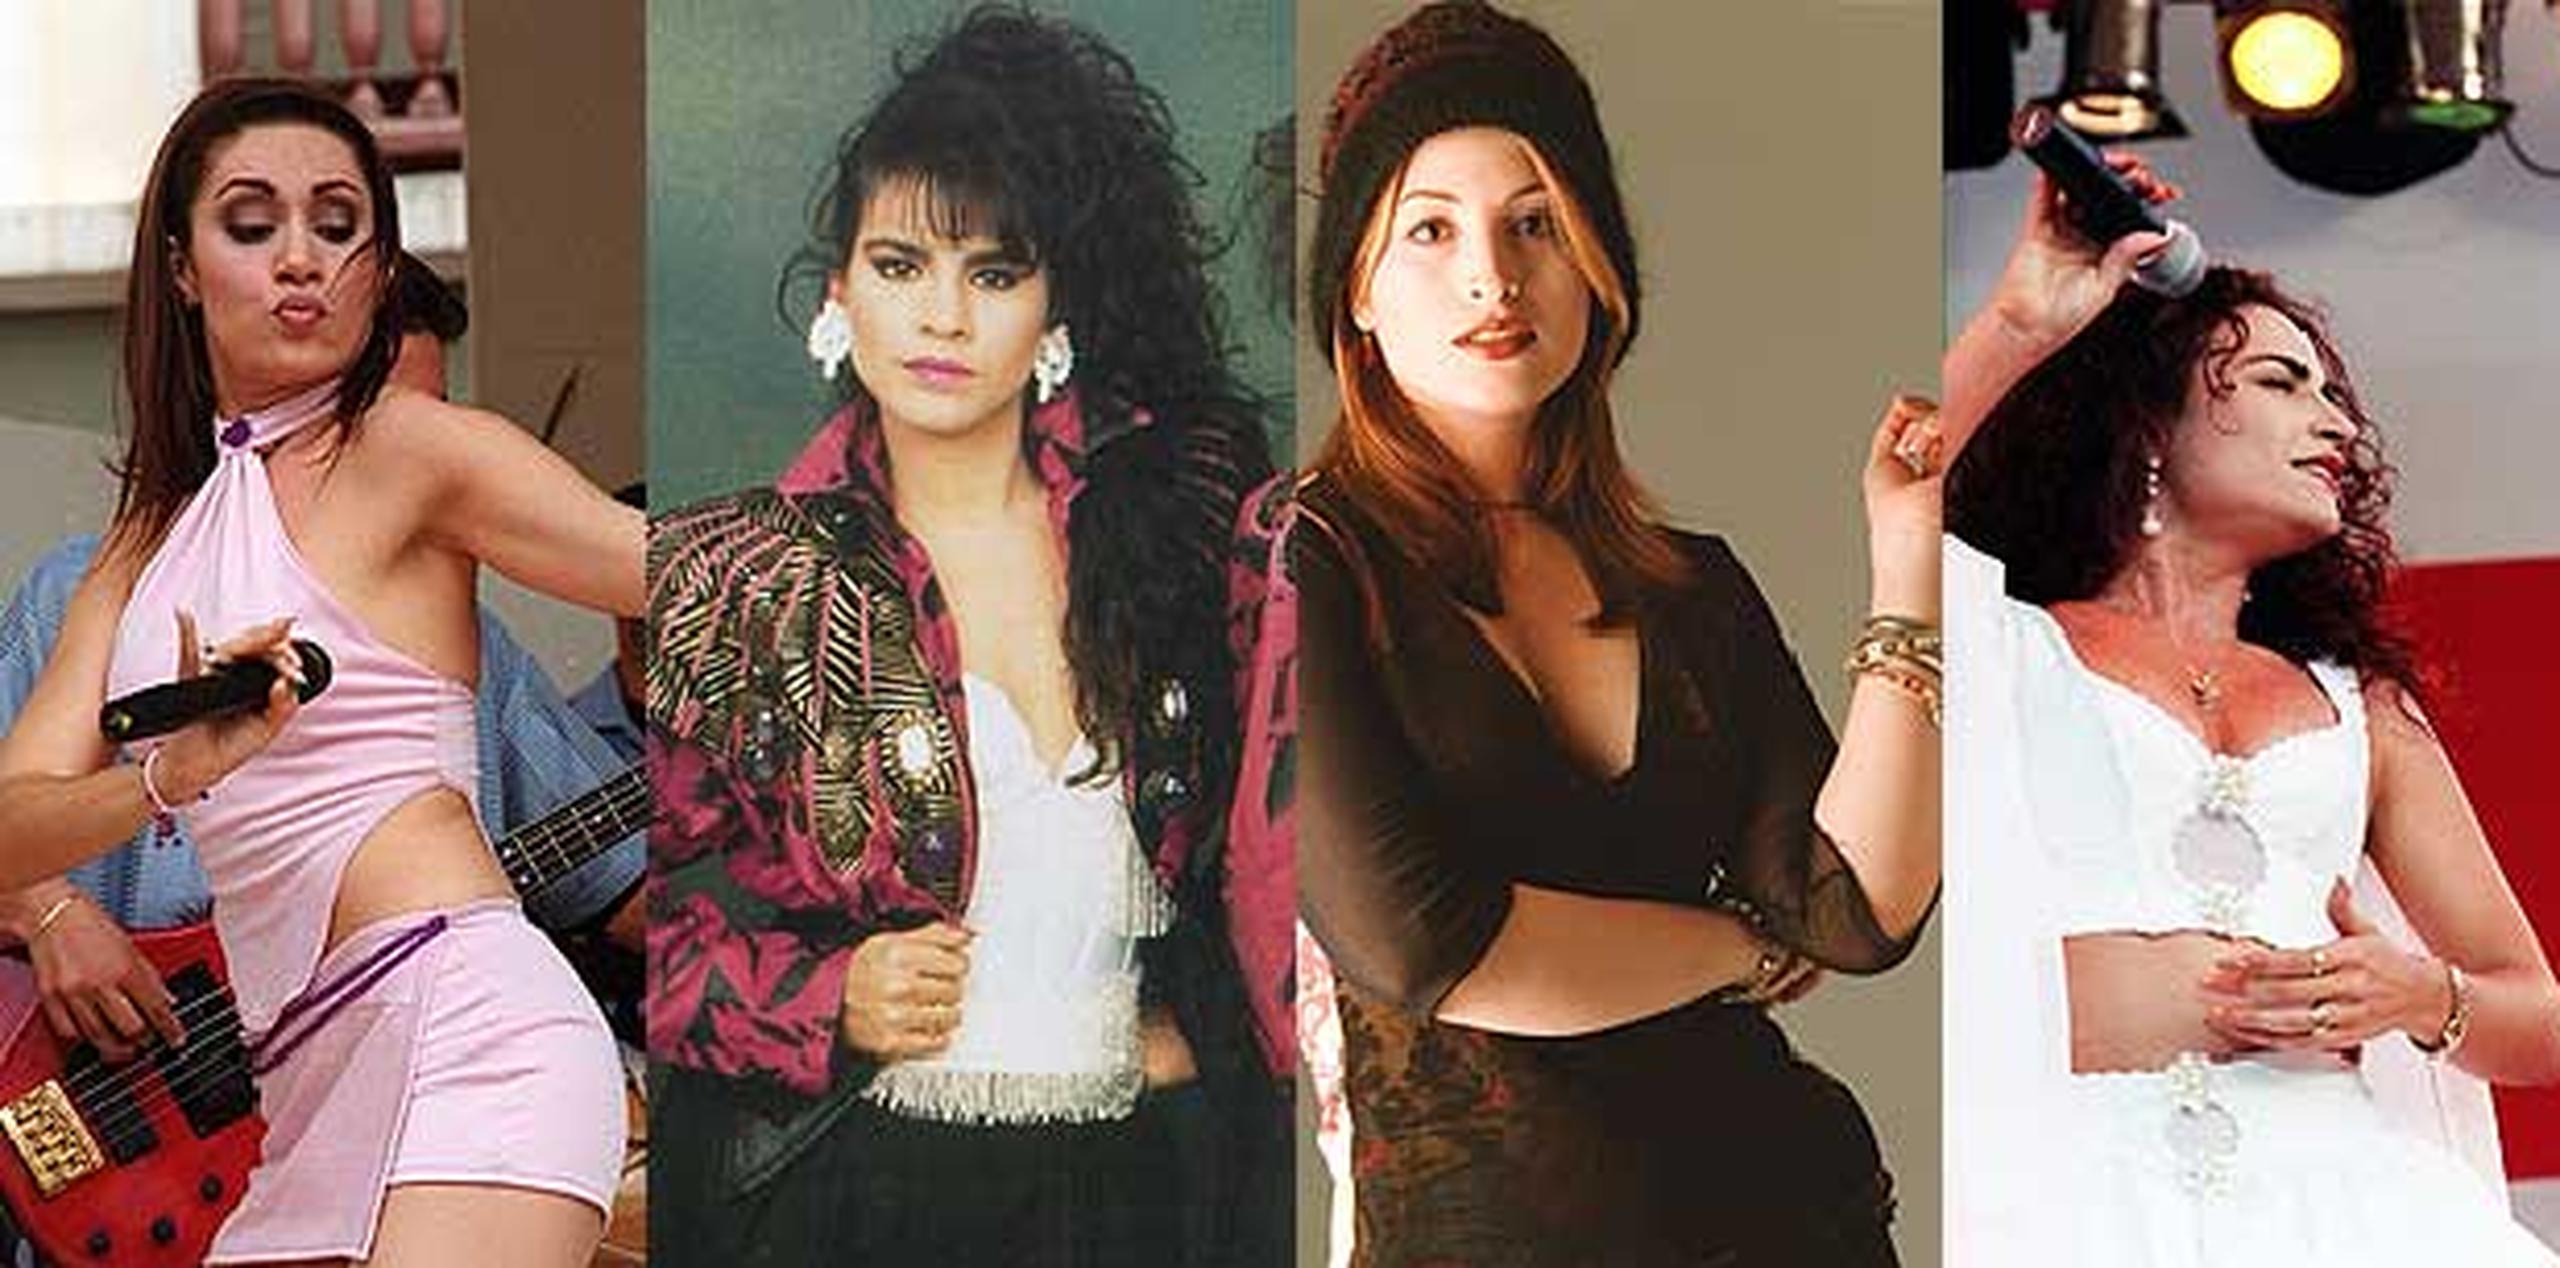 Daniela Droz, Olga Tañón, Jessica Cristina y Jailene Cintrón formaron parte de la época dorada del merengue en Puerto Rico.